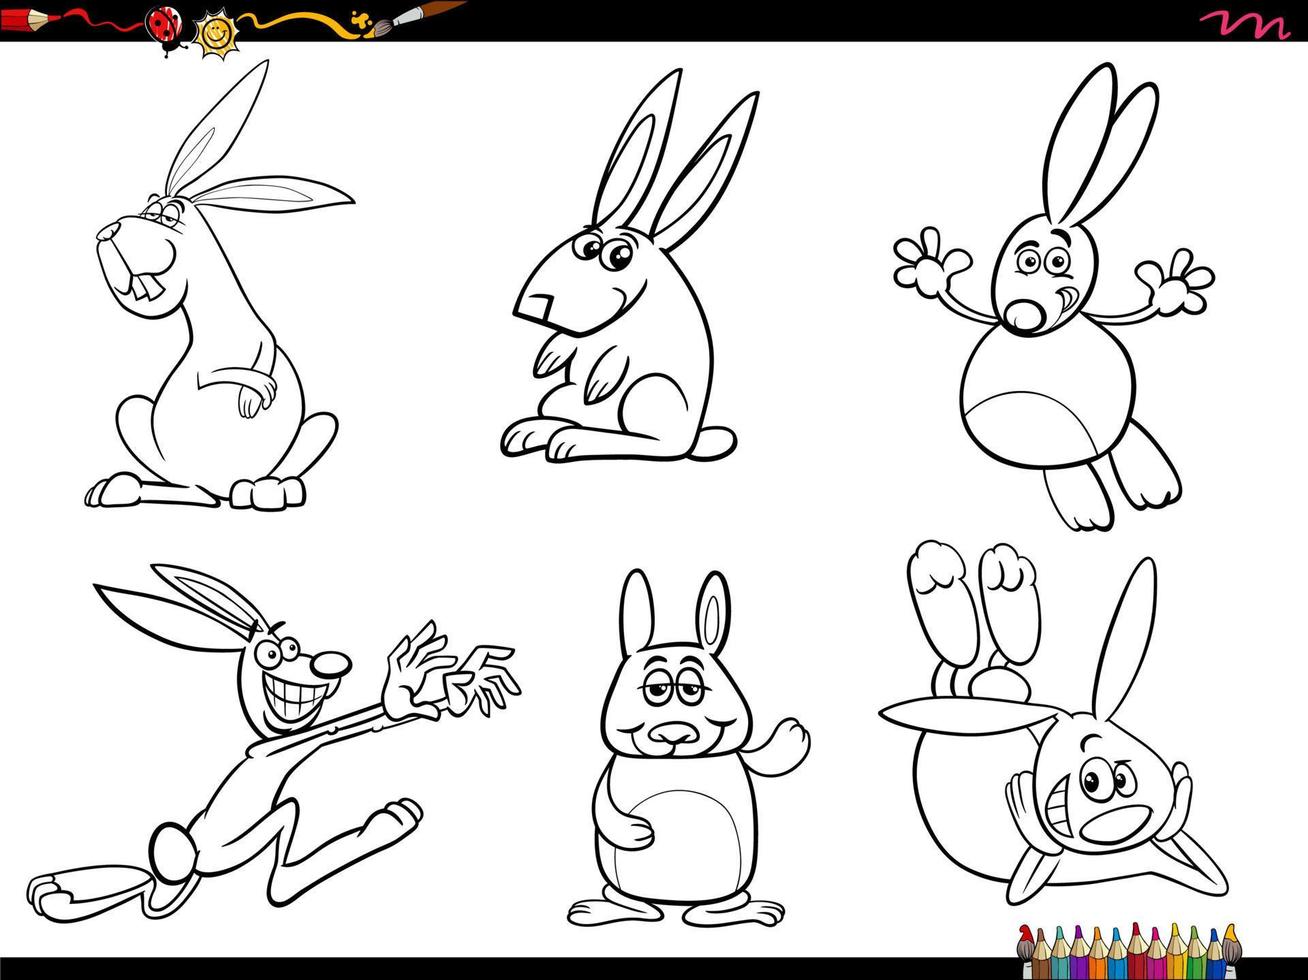 cartoon rabbits animal characters set coloring page vector